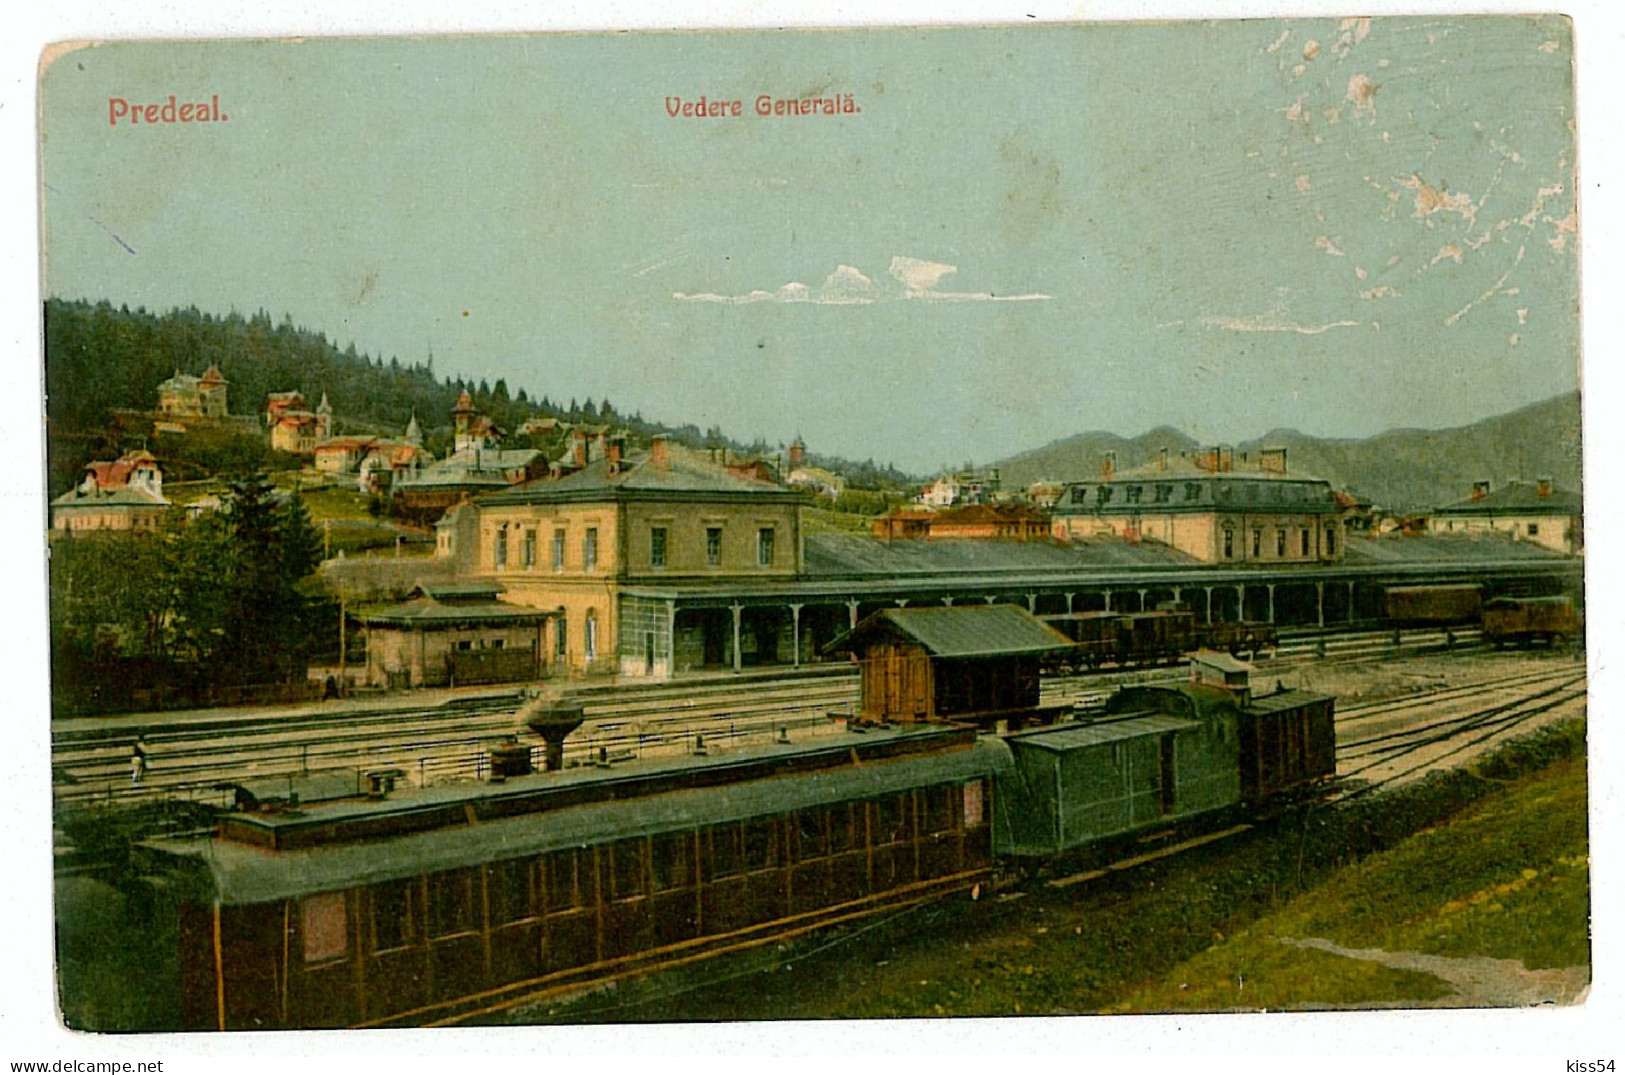 RO 79 - 2911 PREDEAL, Railway Station, Romania - Old Postcard - Unused - Rumänien